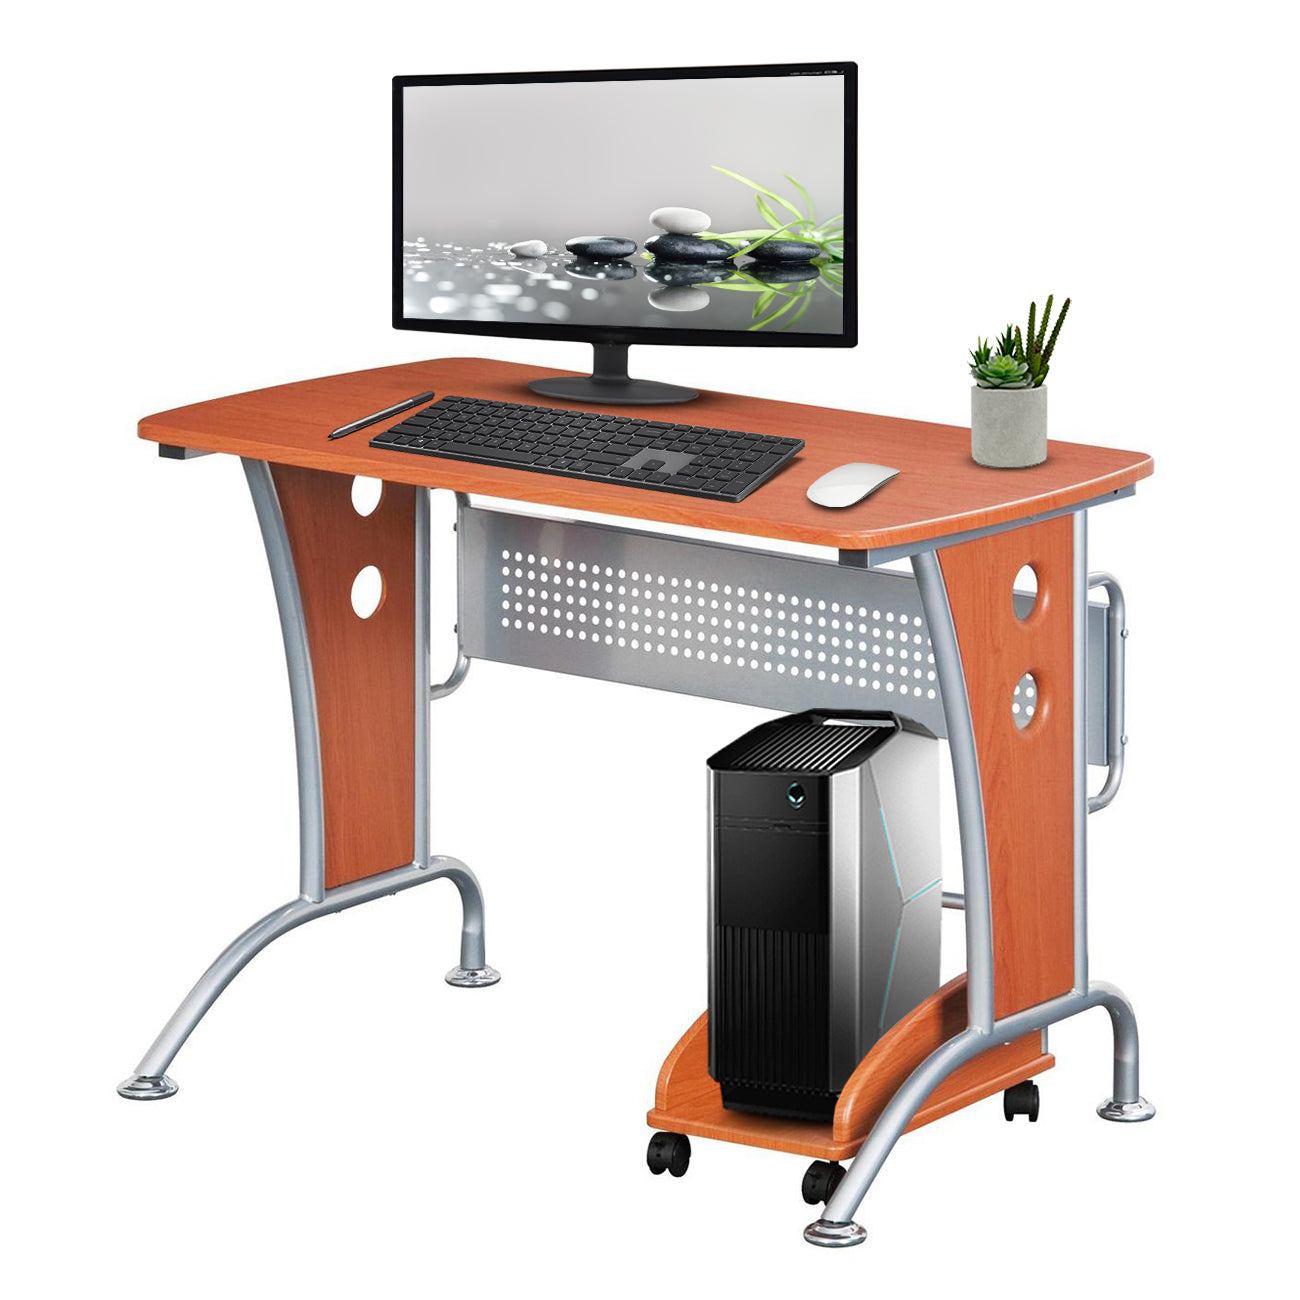 Computer Desk Design: 💯Choose Best Computer Desk Design For Home Online in  India